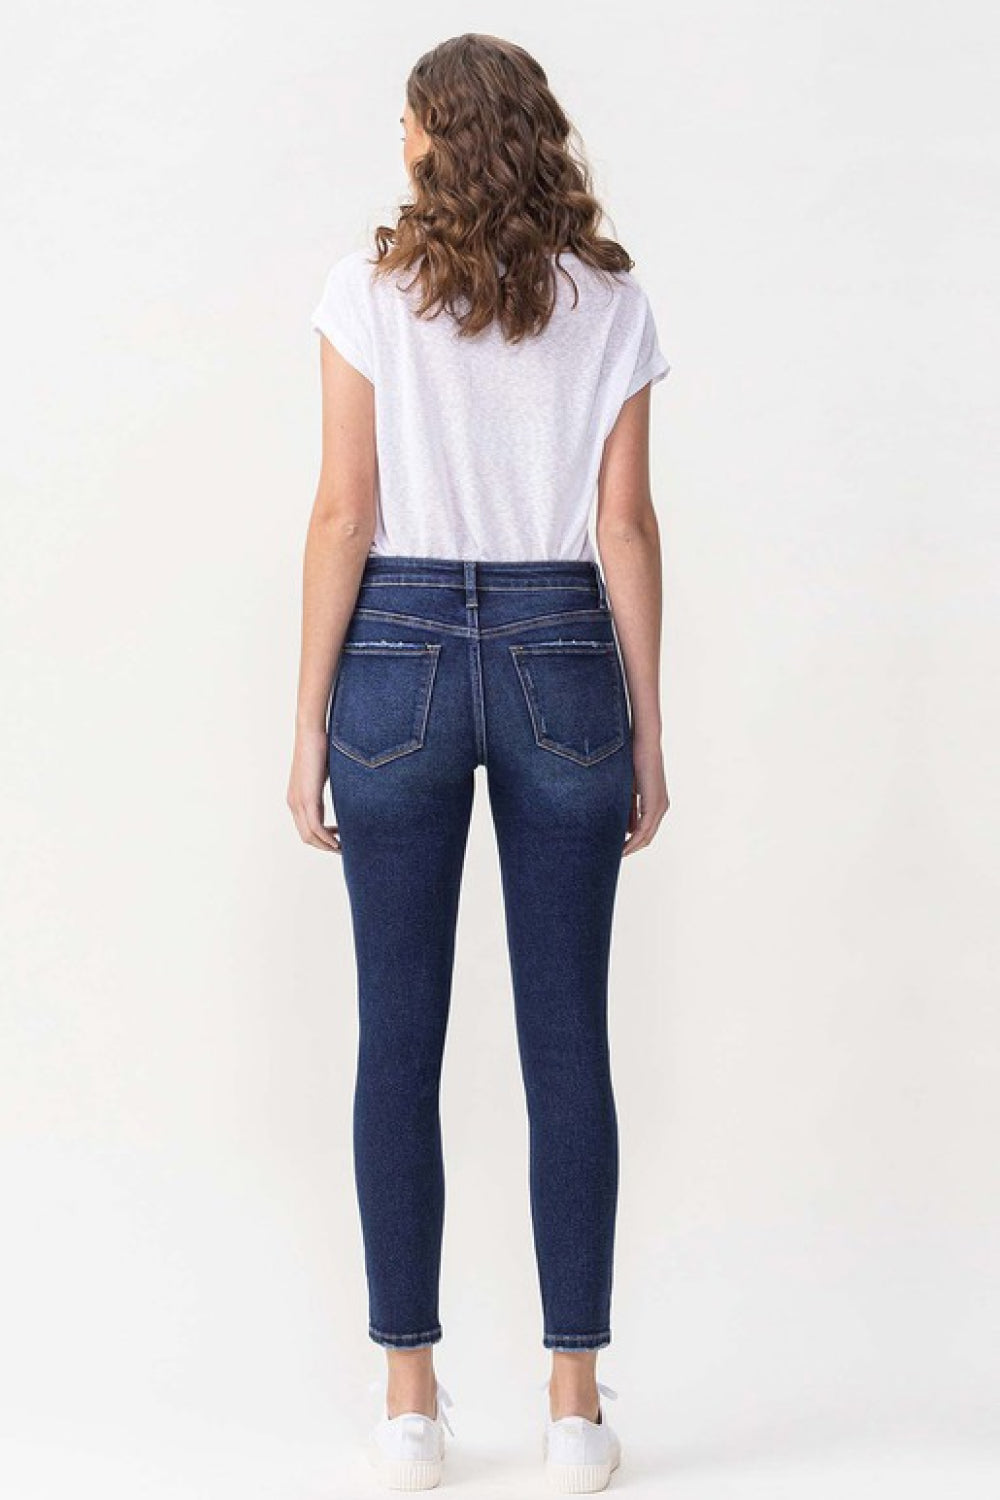 Lovervet by VERVET Full Size Chelsea Midrise Crop Skinny Jeans